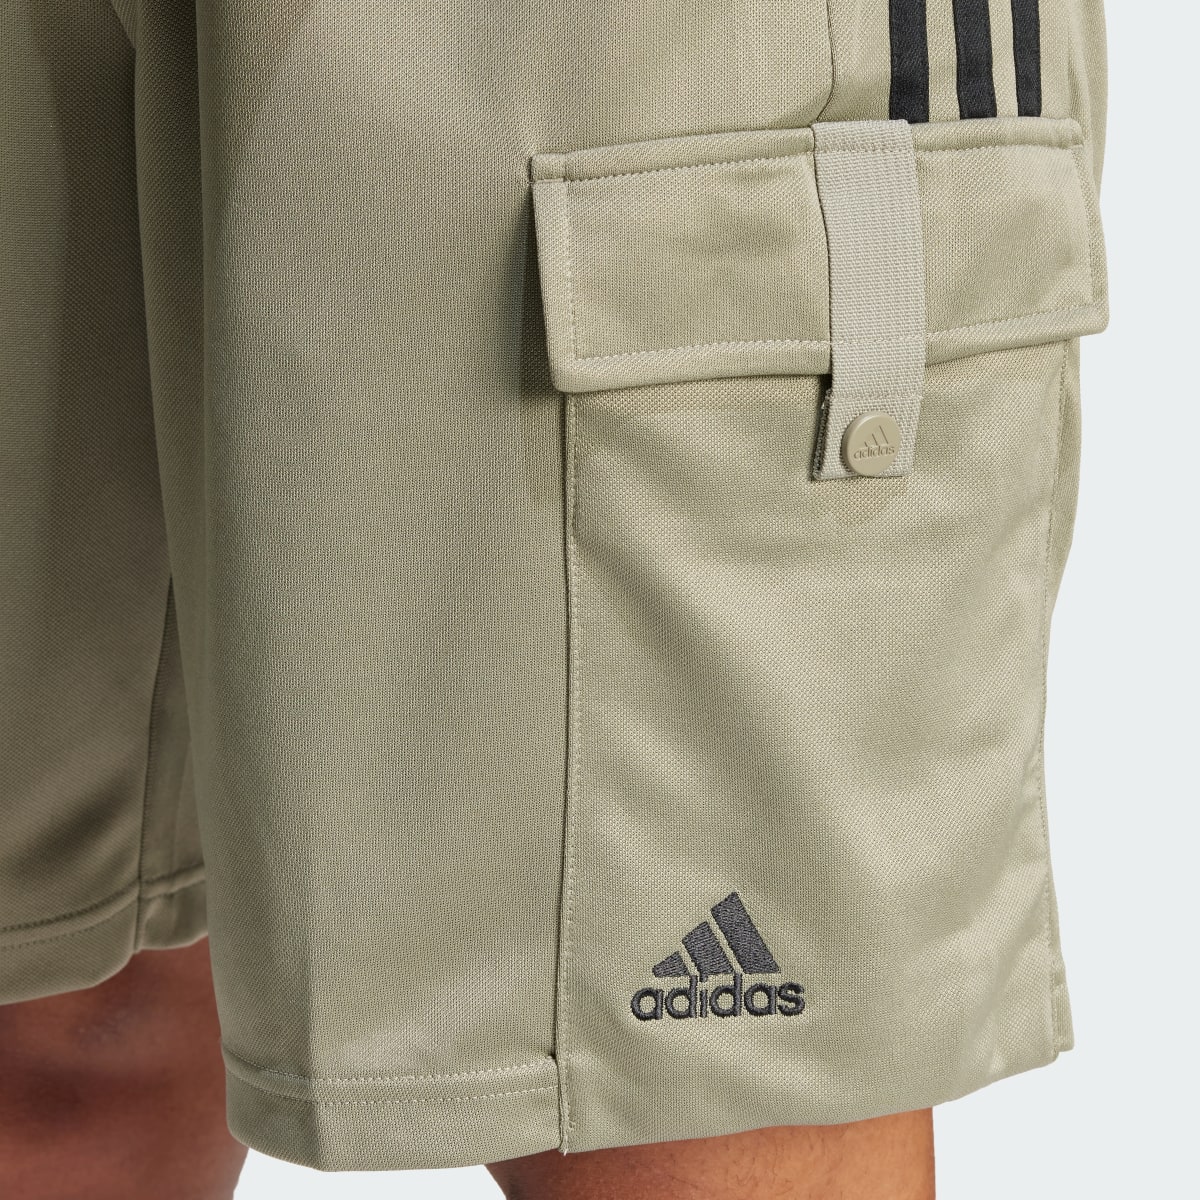 Adidas Tiro Cargo Shorts. 5